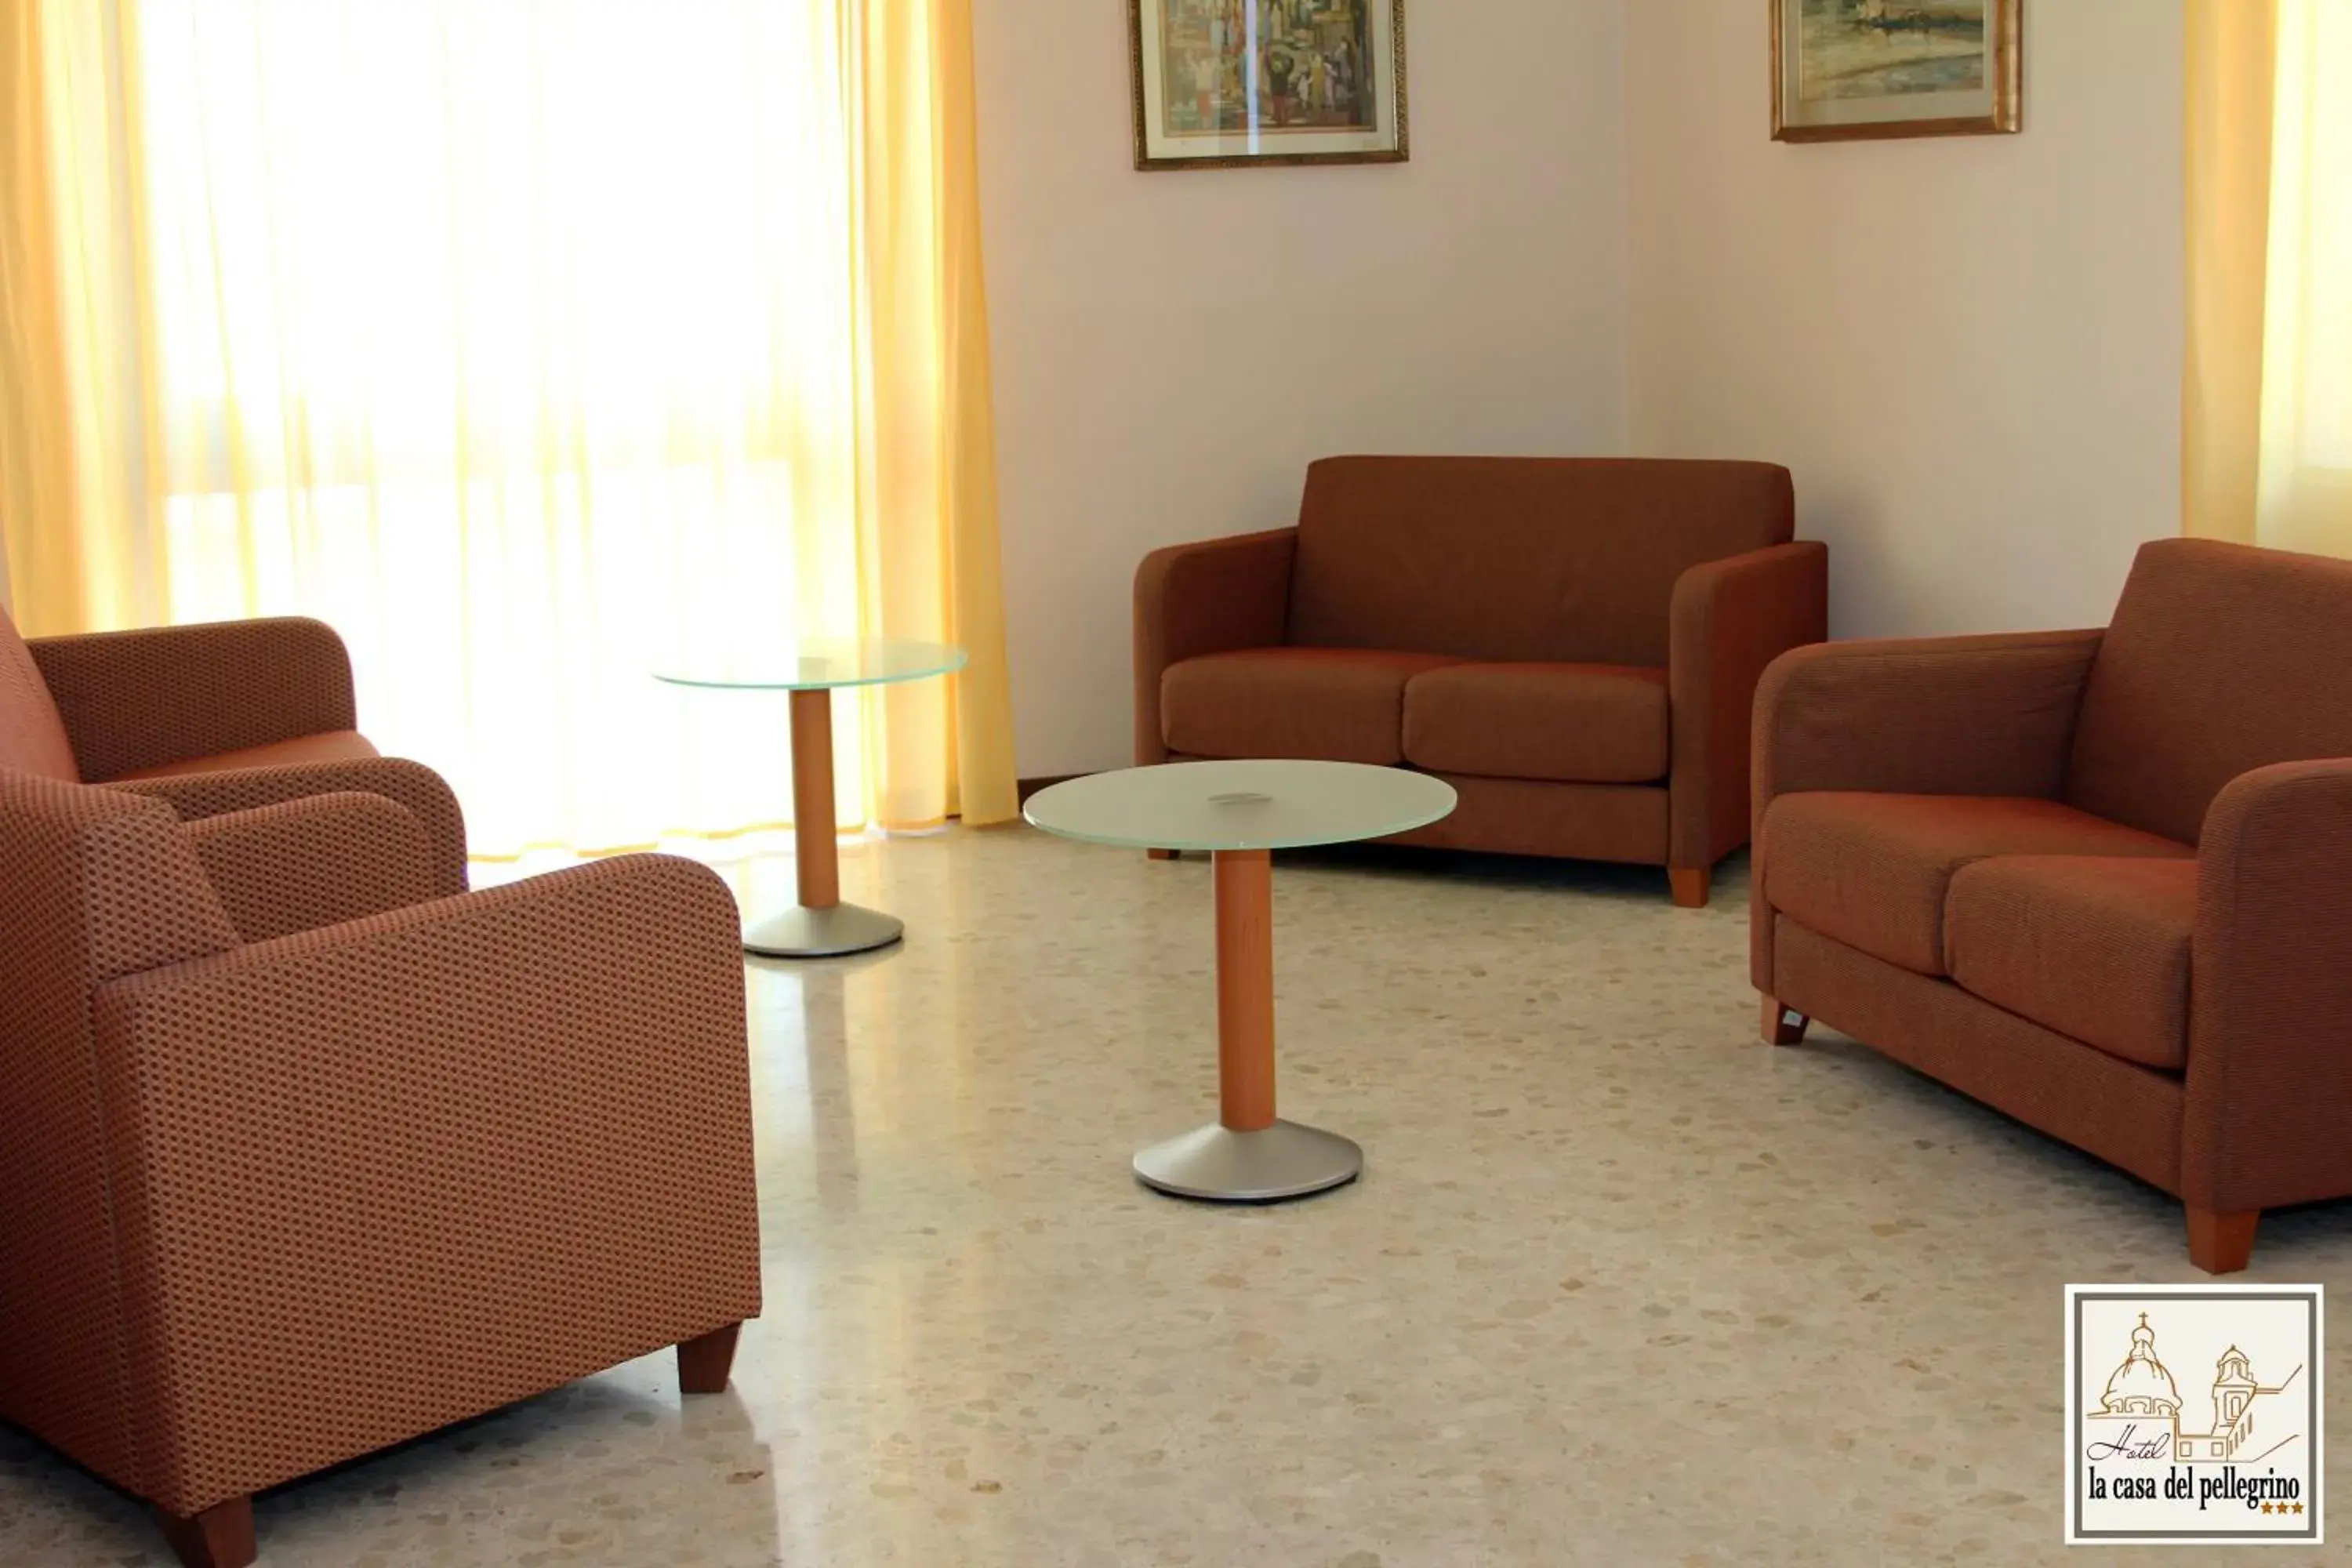 Lobby or reception, Seating Area in Hotel La Casa Del Pellegrino